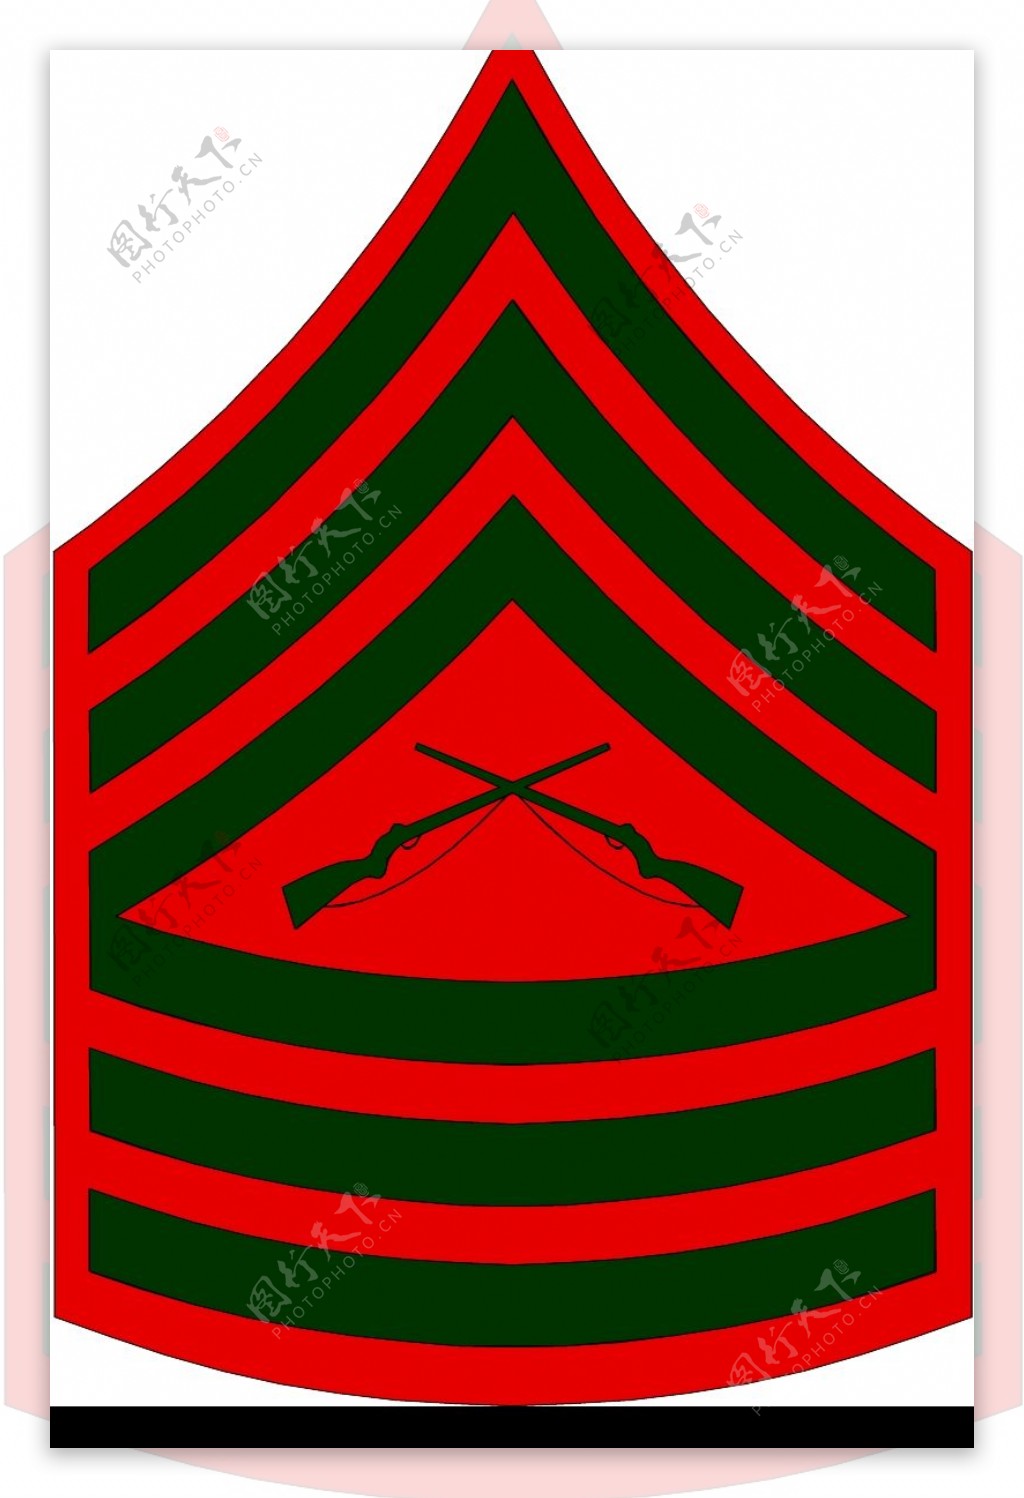 军队徽章0263